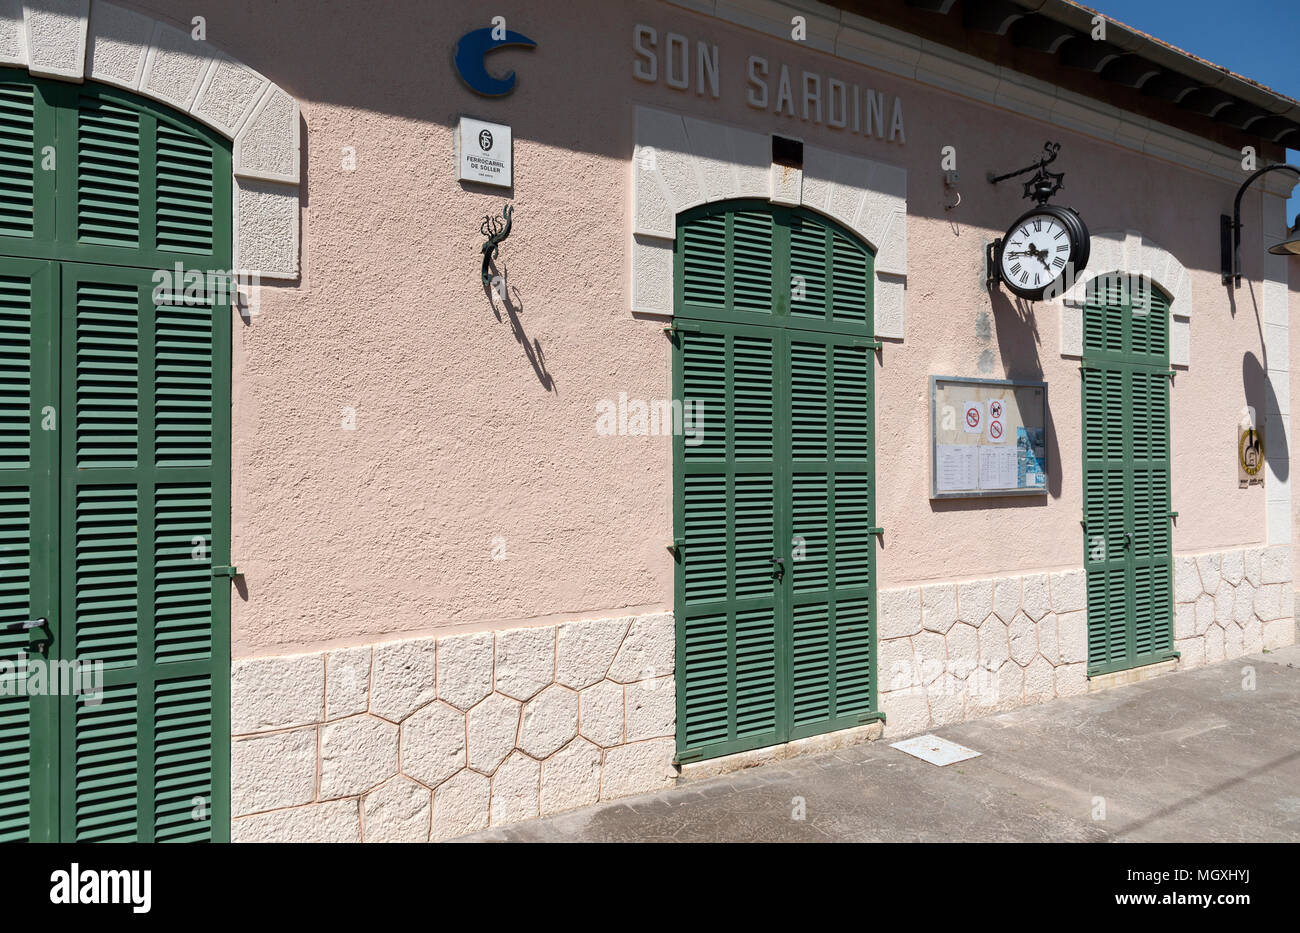 Son Sardina Station, Mallorca, Spanien, 2018. Son Sardina Bahnsteig und Booking Office auf der Palma nach Soller rail Route durch die Serra de Ttr Stockfoto